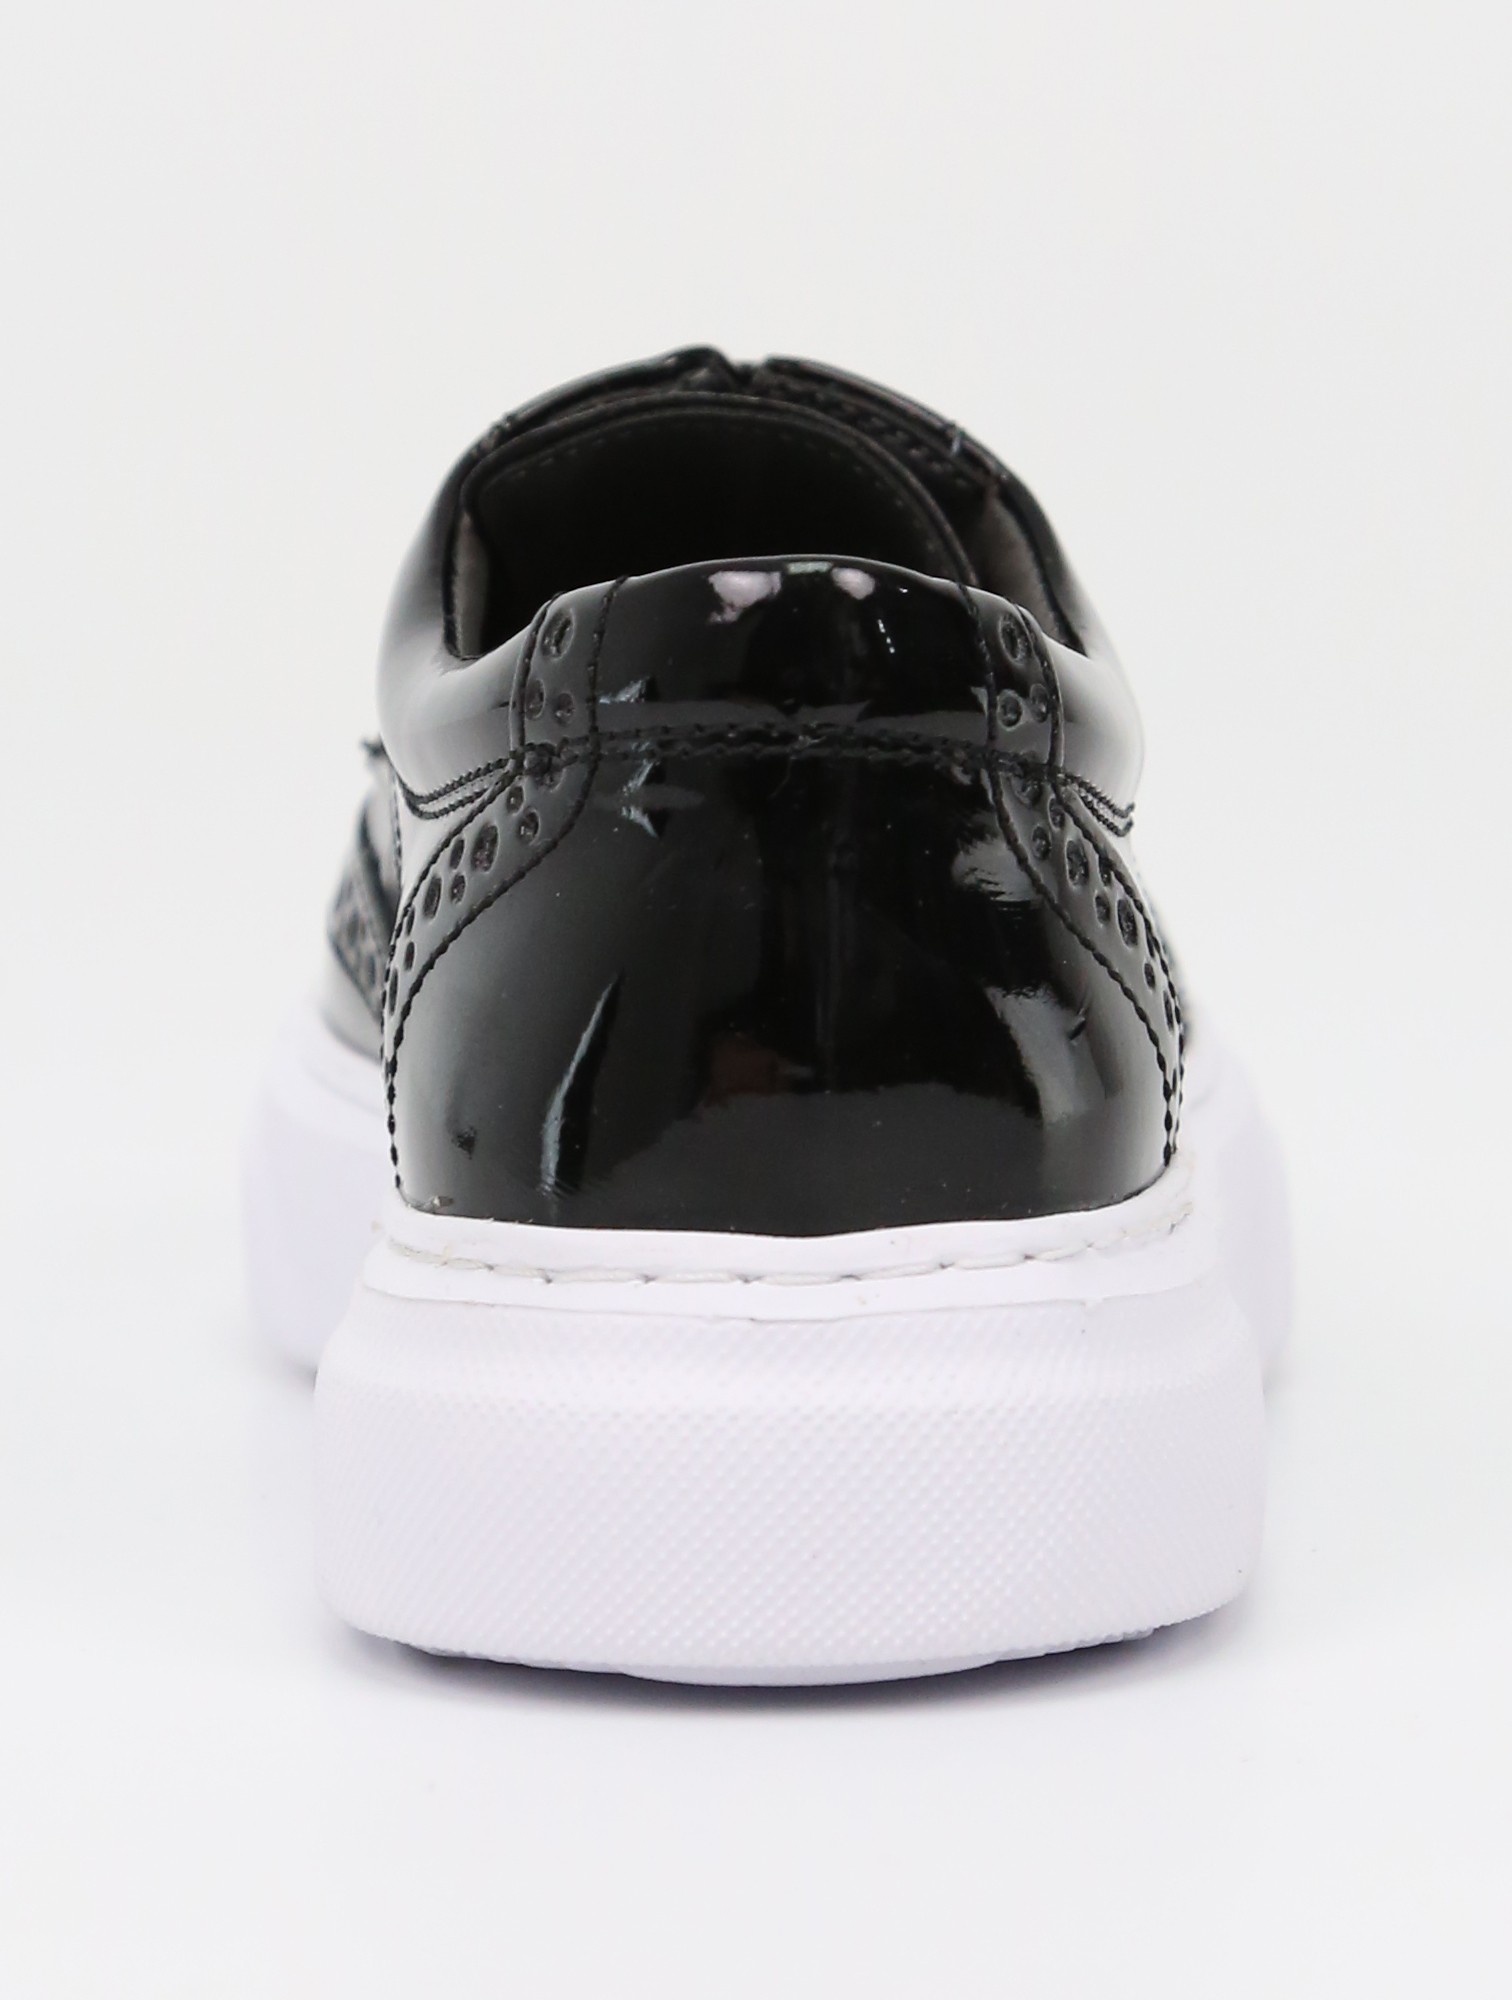 Jungen Schwarze Lack Oxford Schuhe, Klassisches Slip-On Design für Formelle & Casual Anlässe